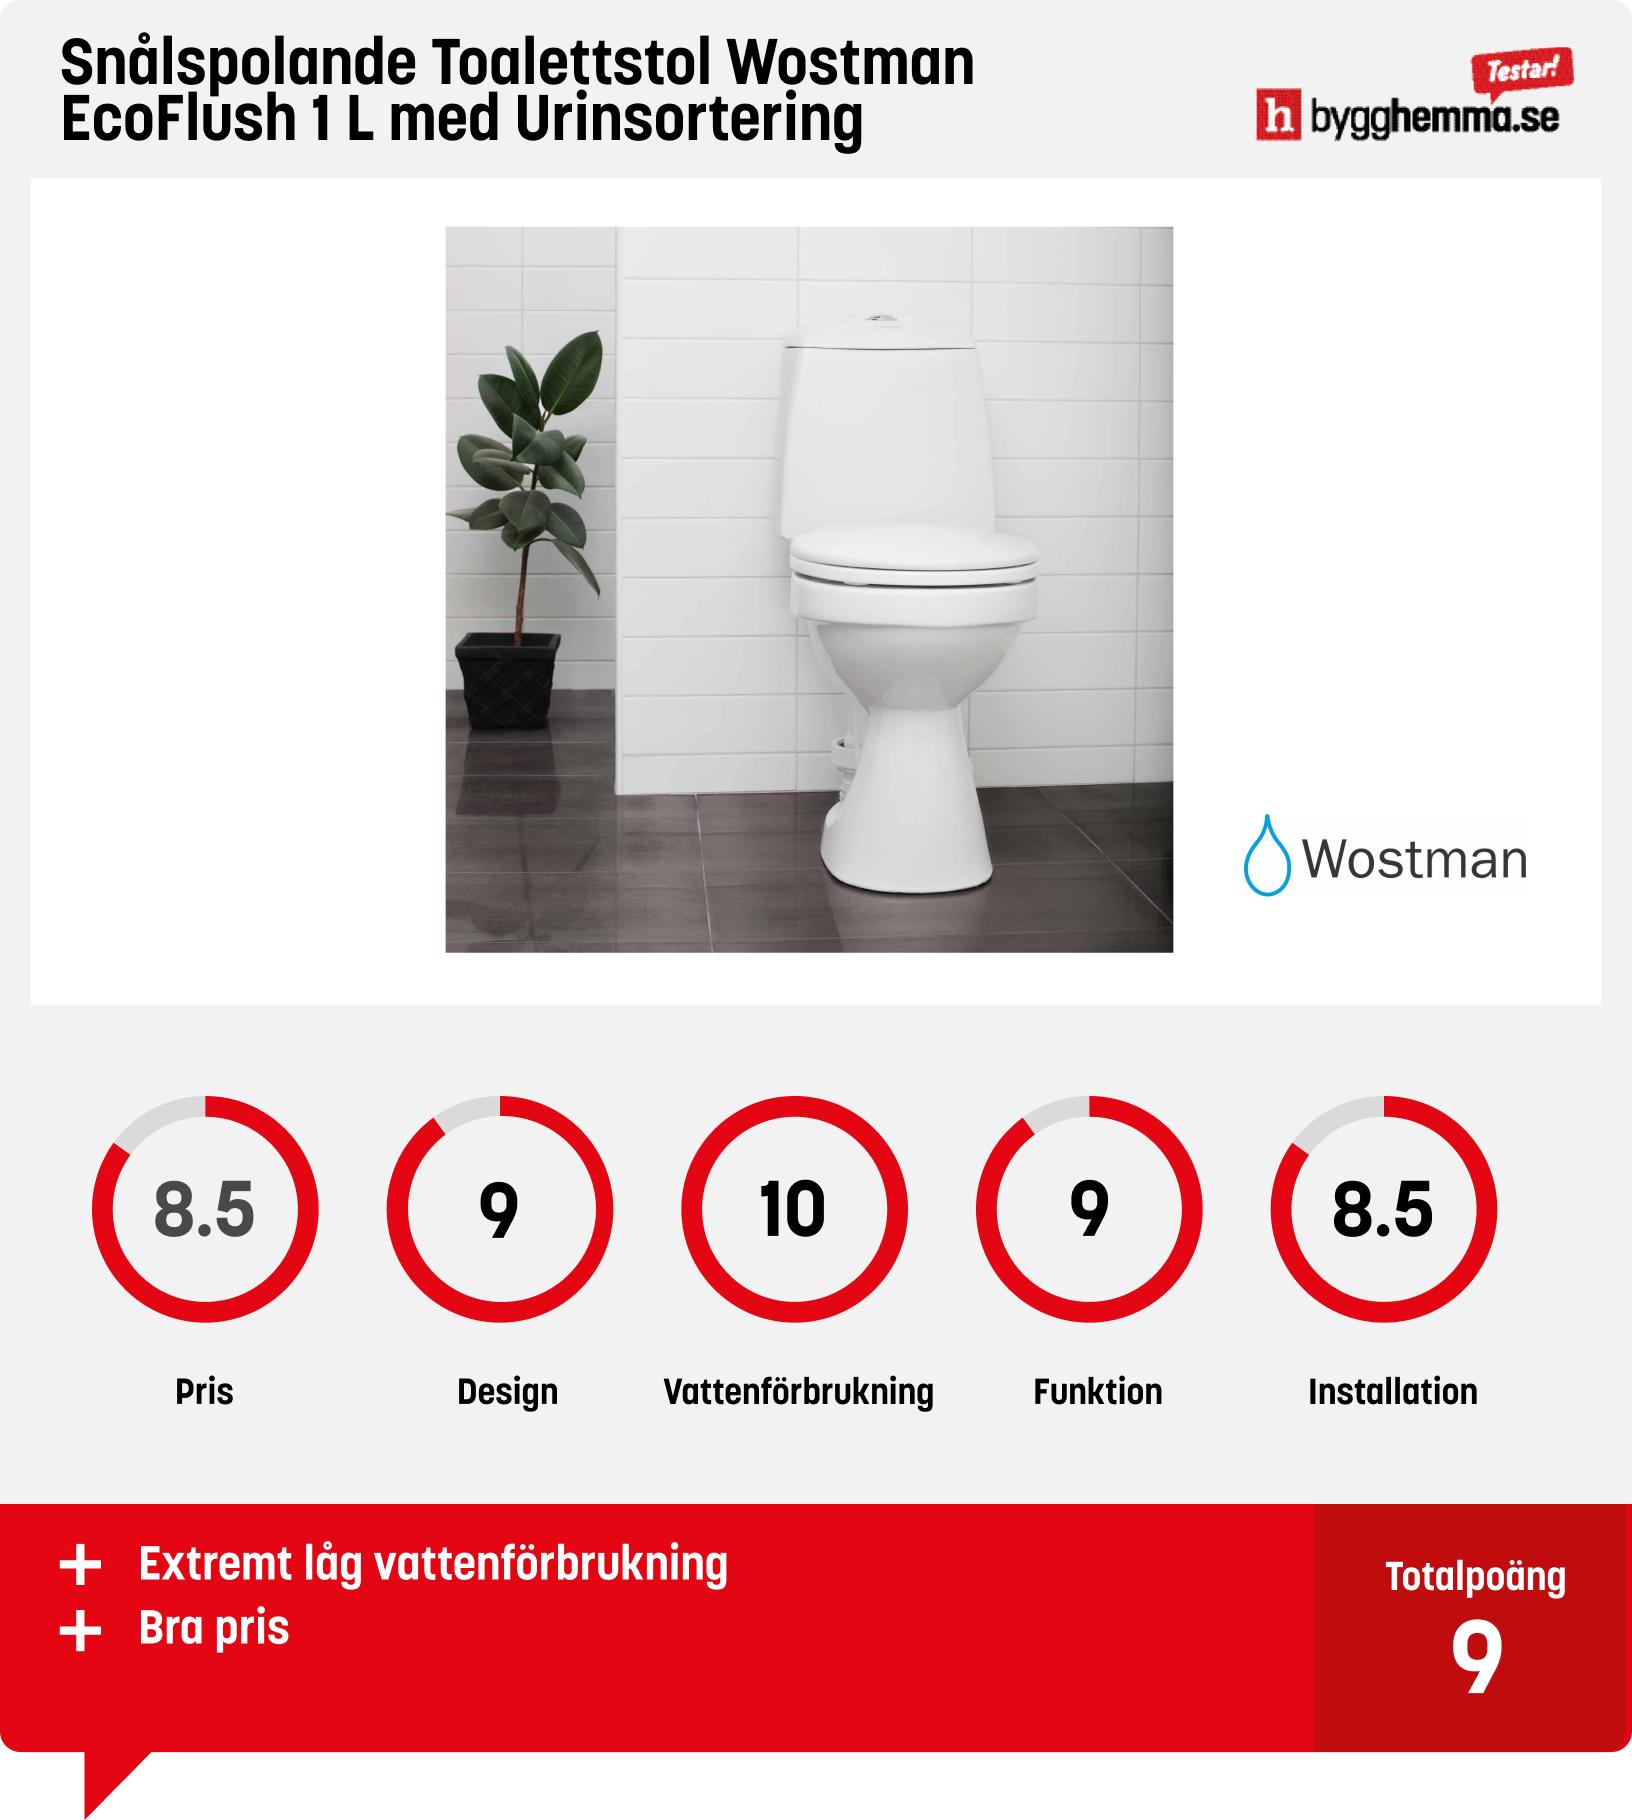 Snålspolande toalett bäst i test - Snålspolande Toalettstol Wostman EcoFlush 1 L med Urinsortering